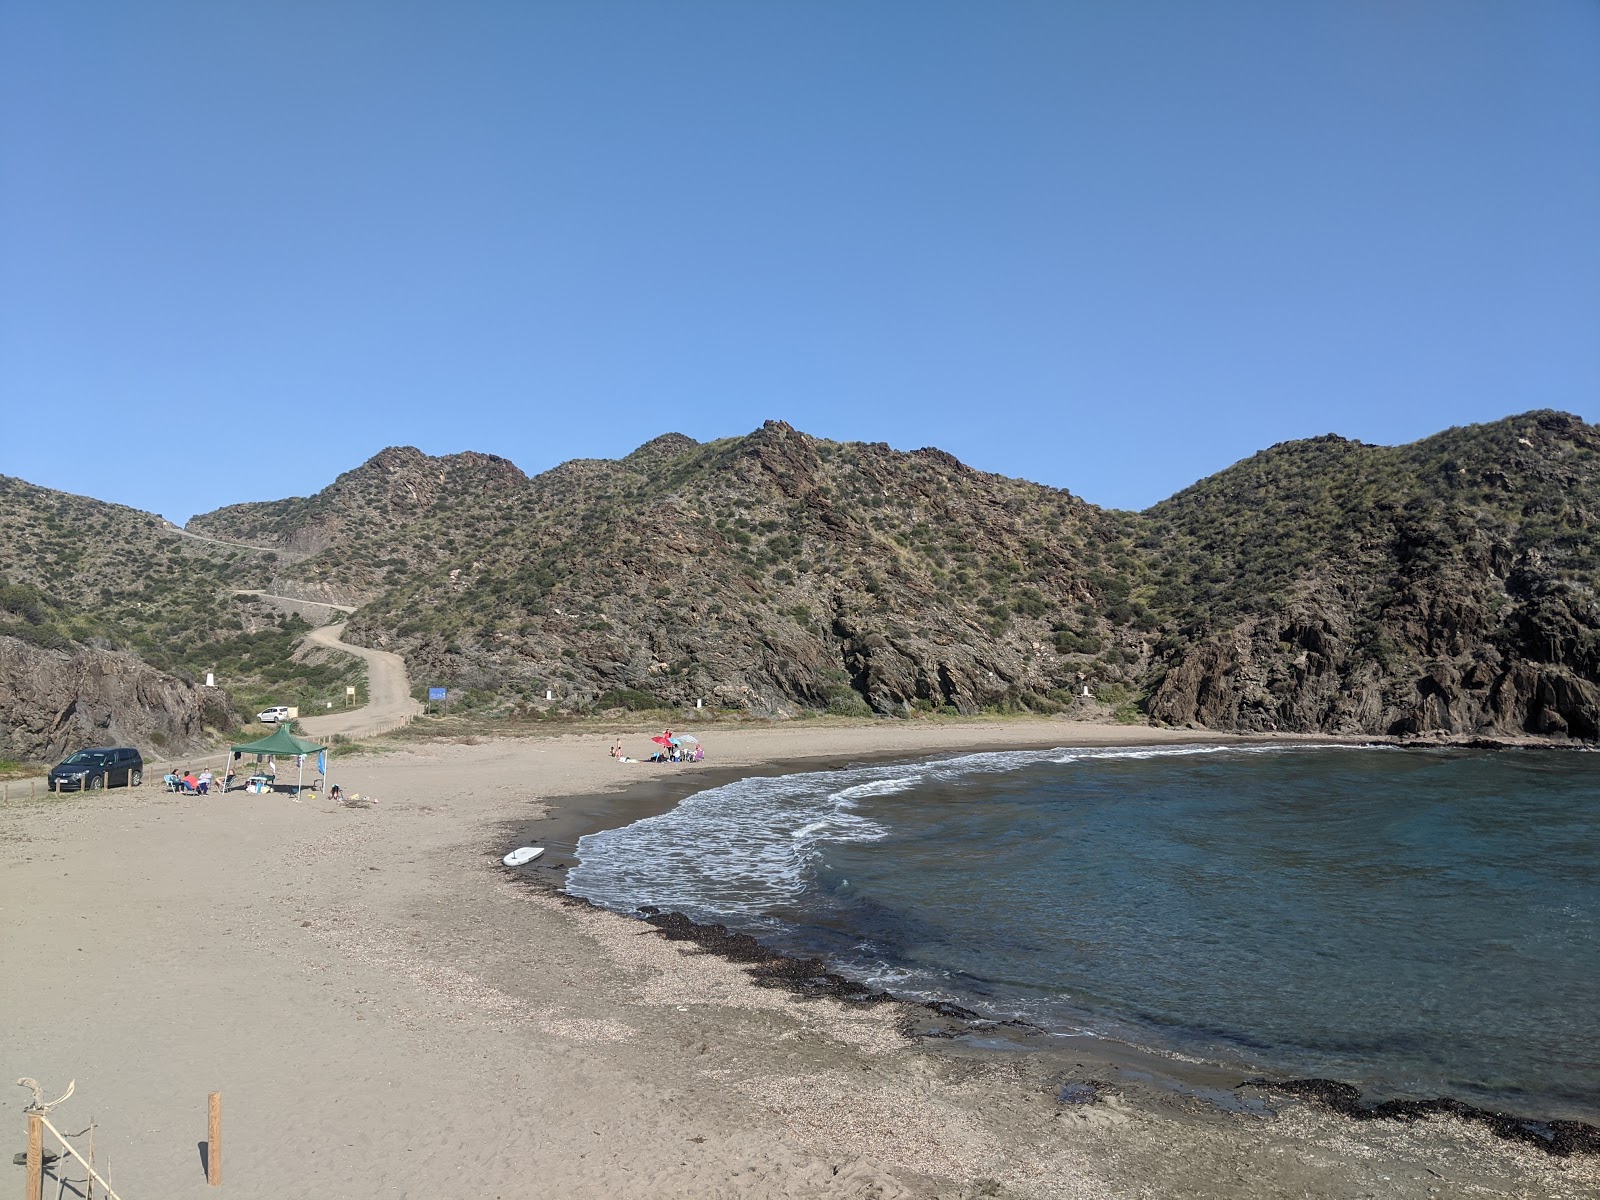 Playa del Siscal'in fotoğrafı kahverengi kum yüzey ile